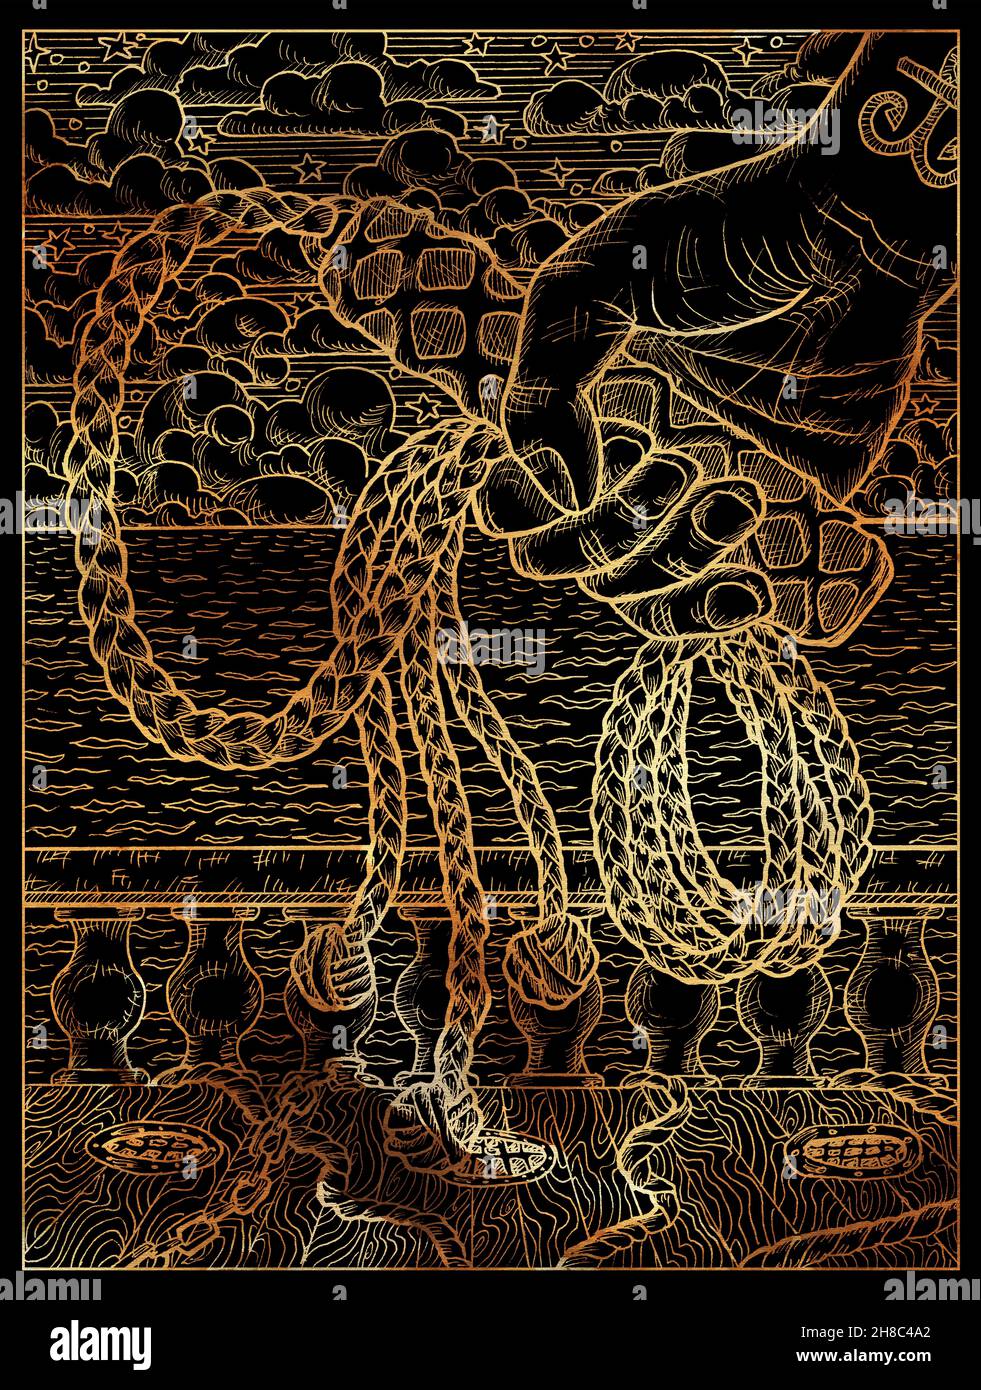 Schwarz-goldene Illustration mit Handgriff vor dem Hintergrund von Schiffsdeck, Seilen und Meereswellen. Vintage-Zeichnungen, marine Konzept, colorin Stockfoto